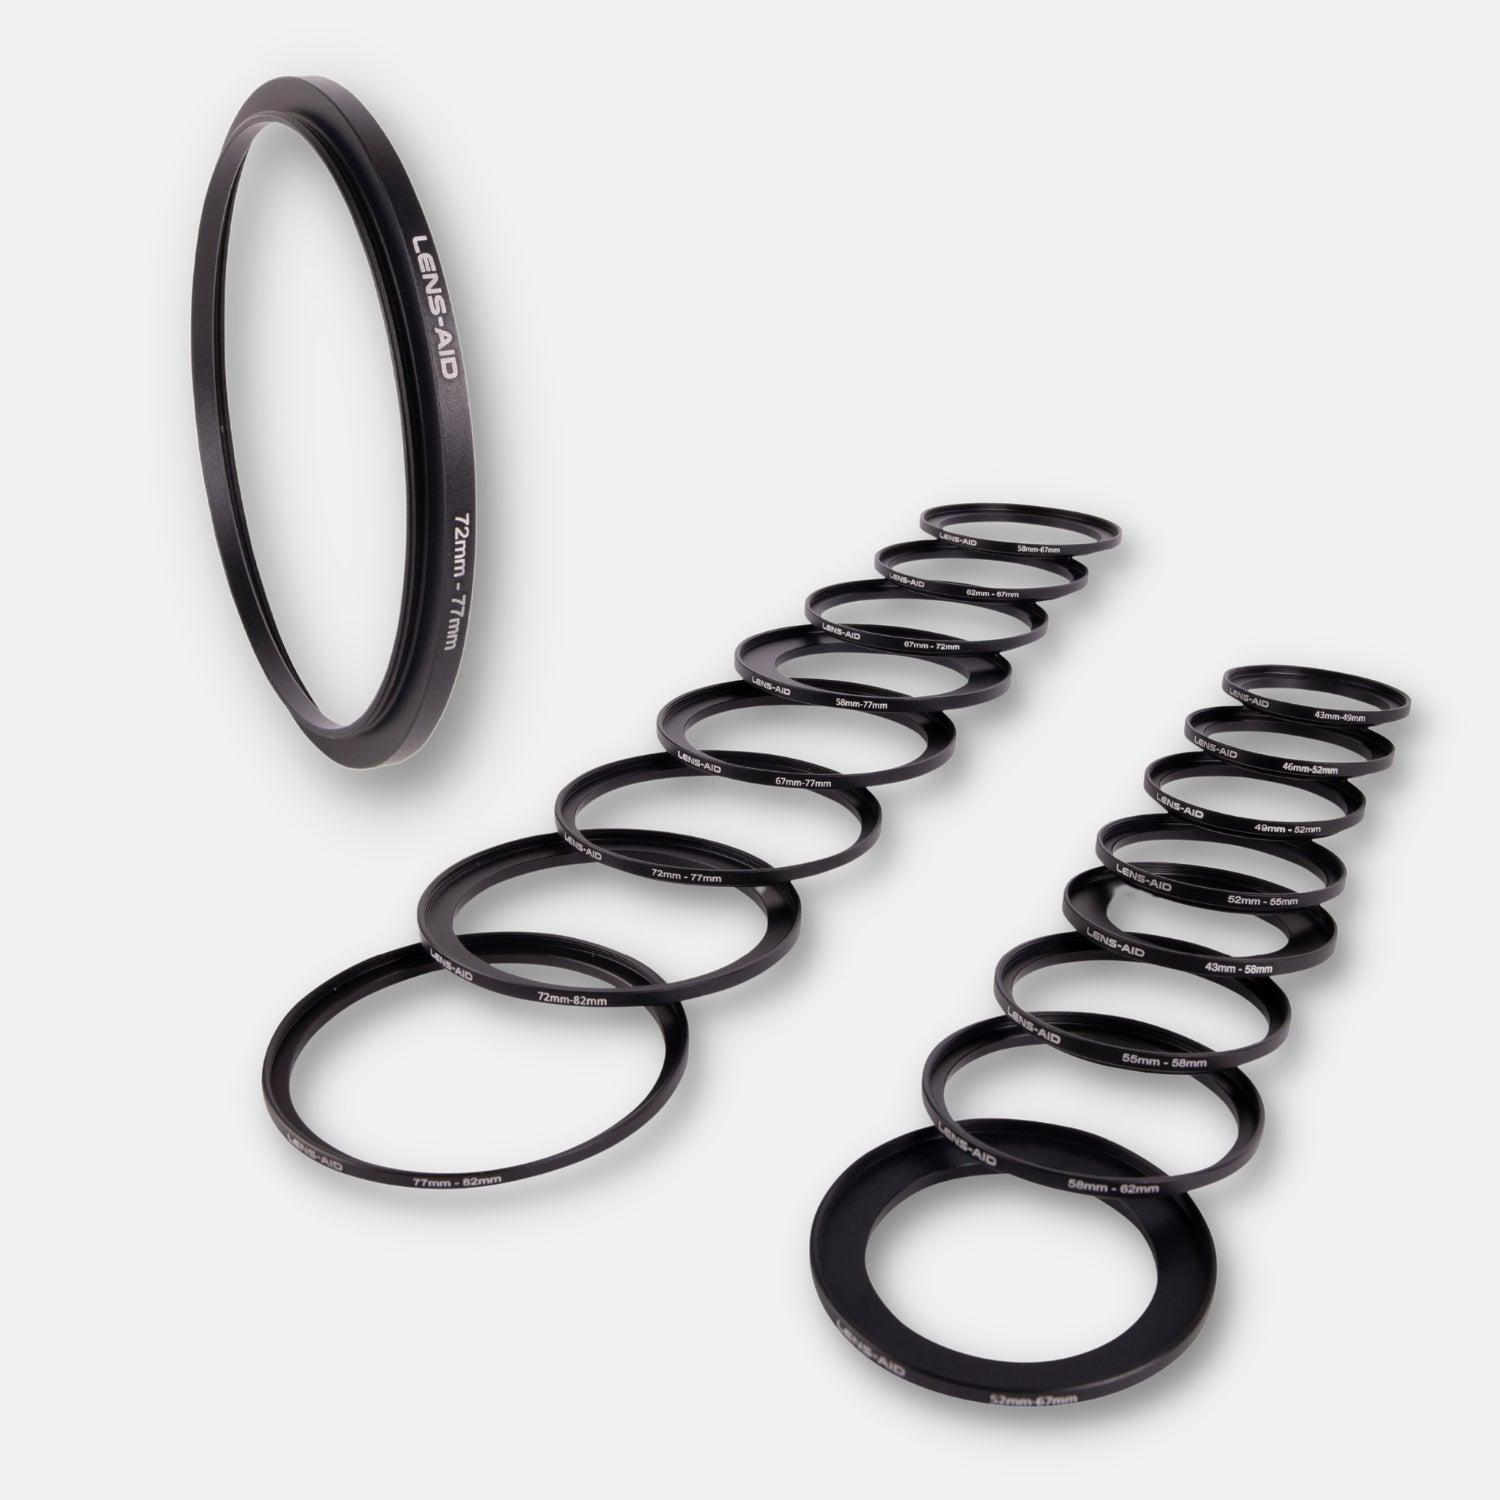 Ringe, Schwarz, für mit LENS-AID Filtergewinde passend Step-Up 52-55mm, Objektive